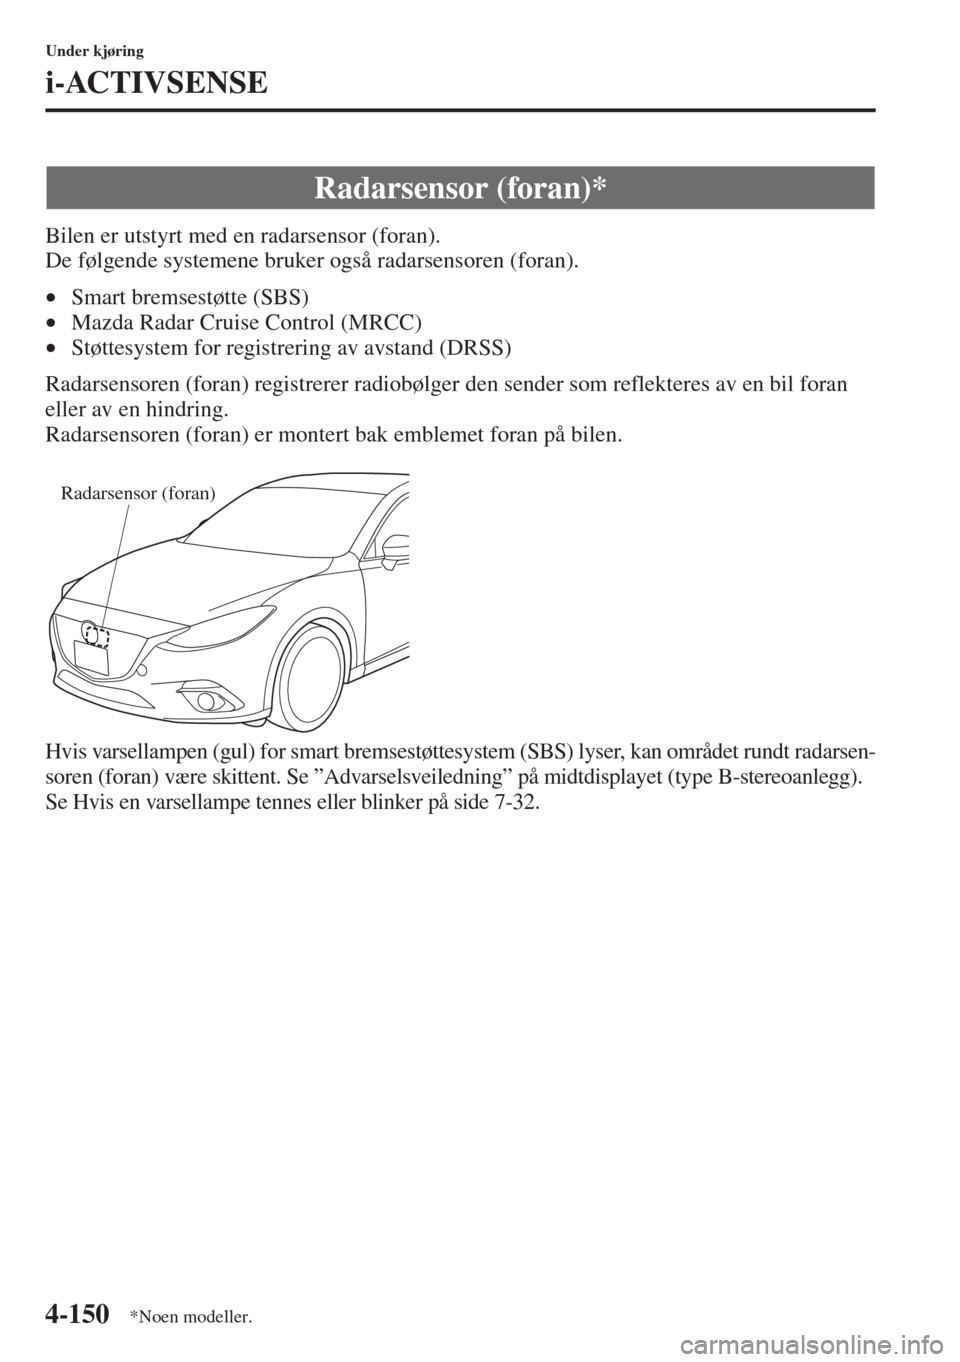 MAZDA MODEL 3 HATCHBACK 2015  Brukerhåndbok (in Norwegian) 4-150
Under kjøring
i-ACTIVSENSE
Bilen er utstyrt med en radarsensor (foran). 
De følgende systemene bruker også radarsensoren (foran).
•Smart bremsestøtte (SBS) 
•Mazda Radar Cruise Control (